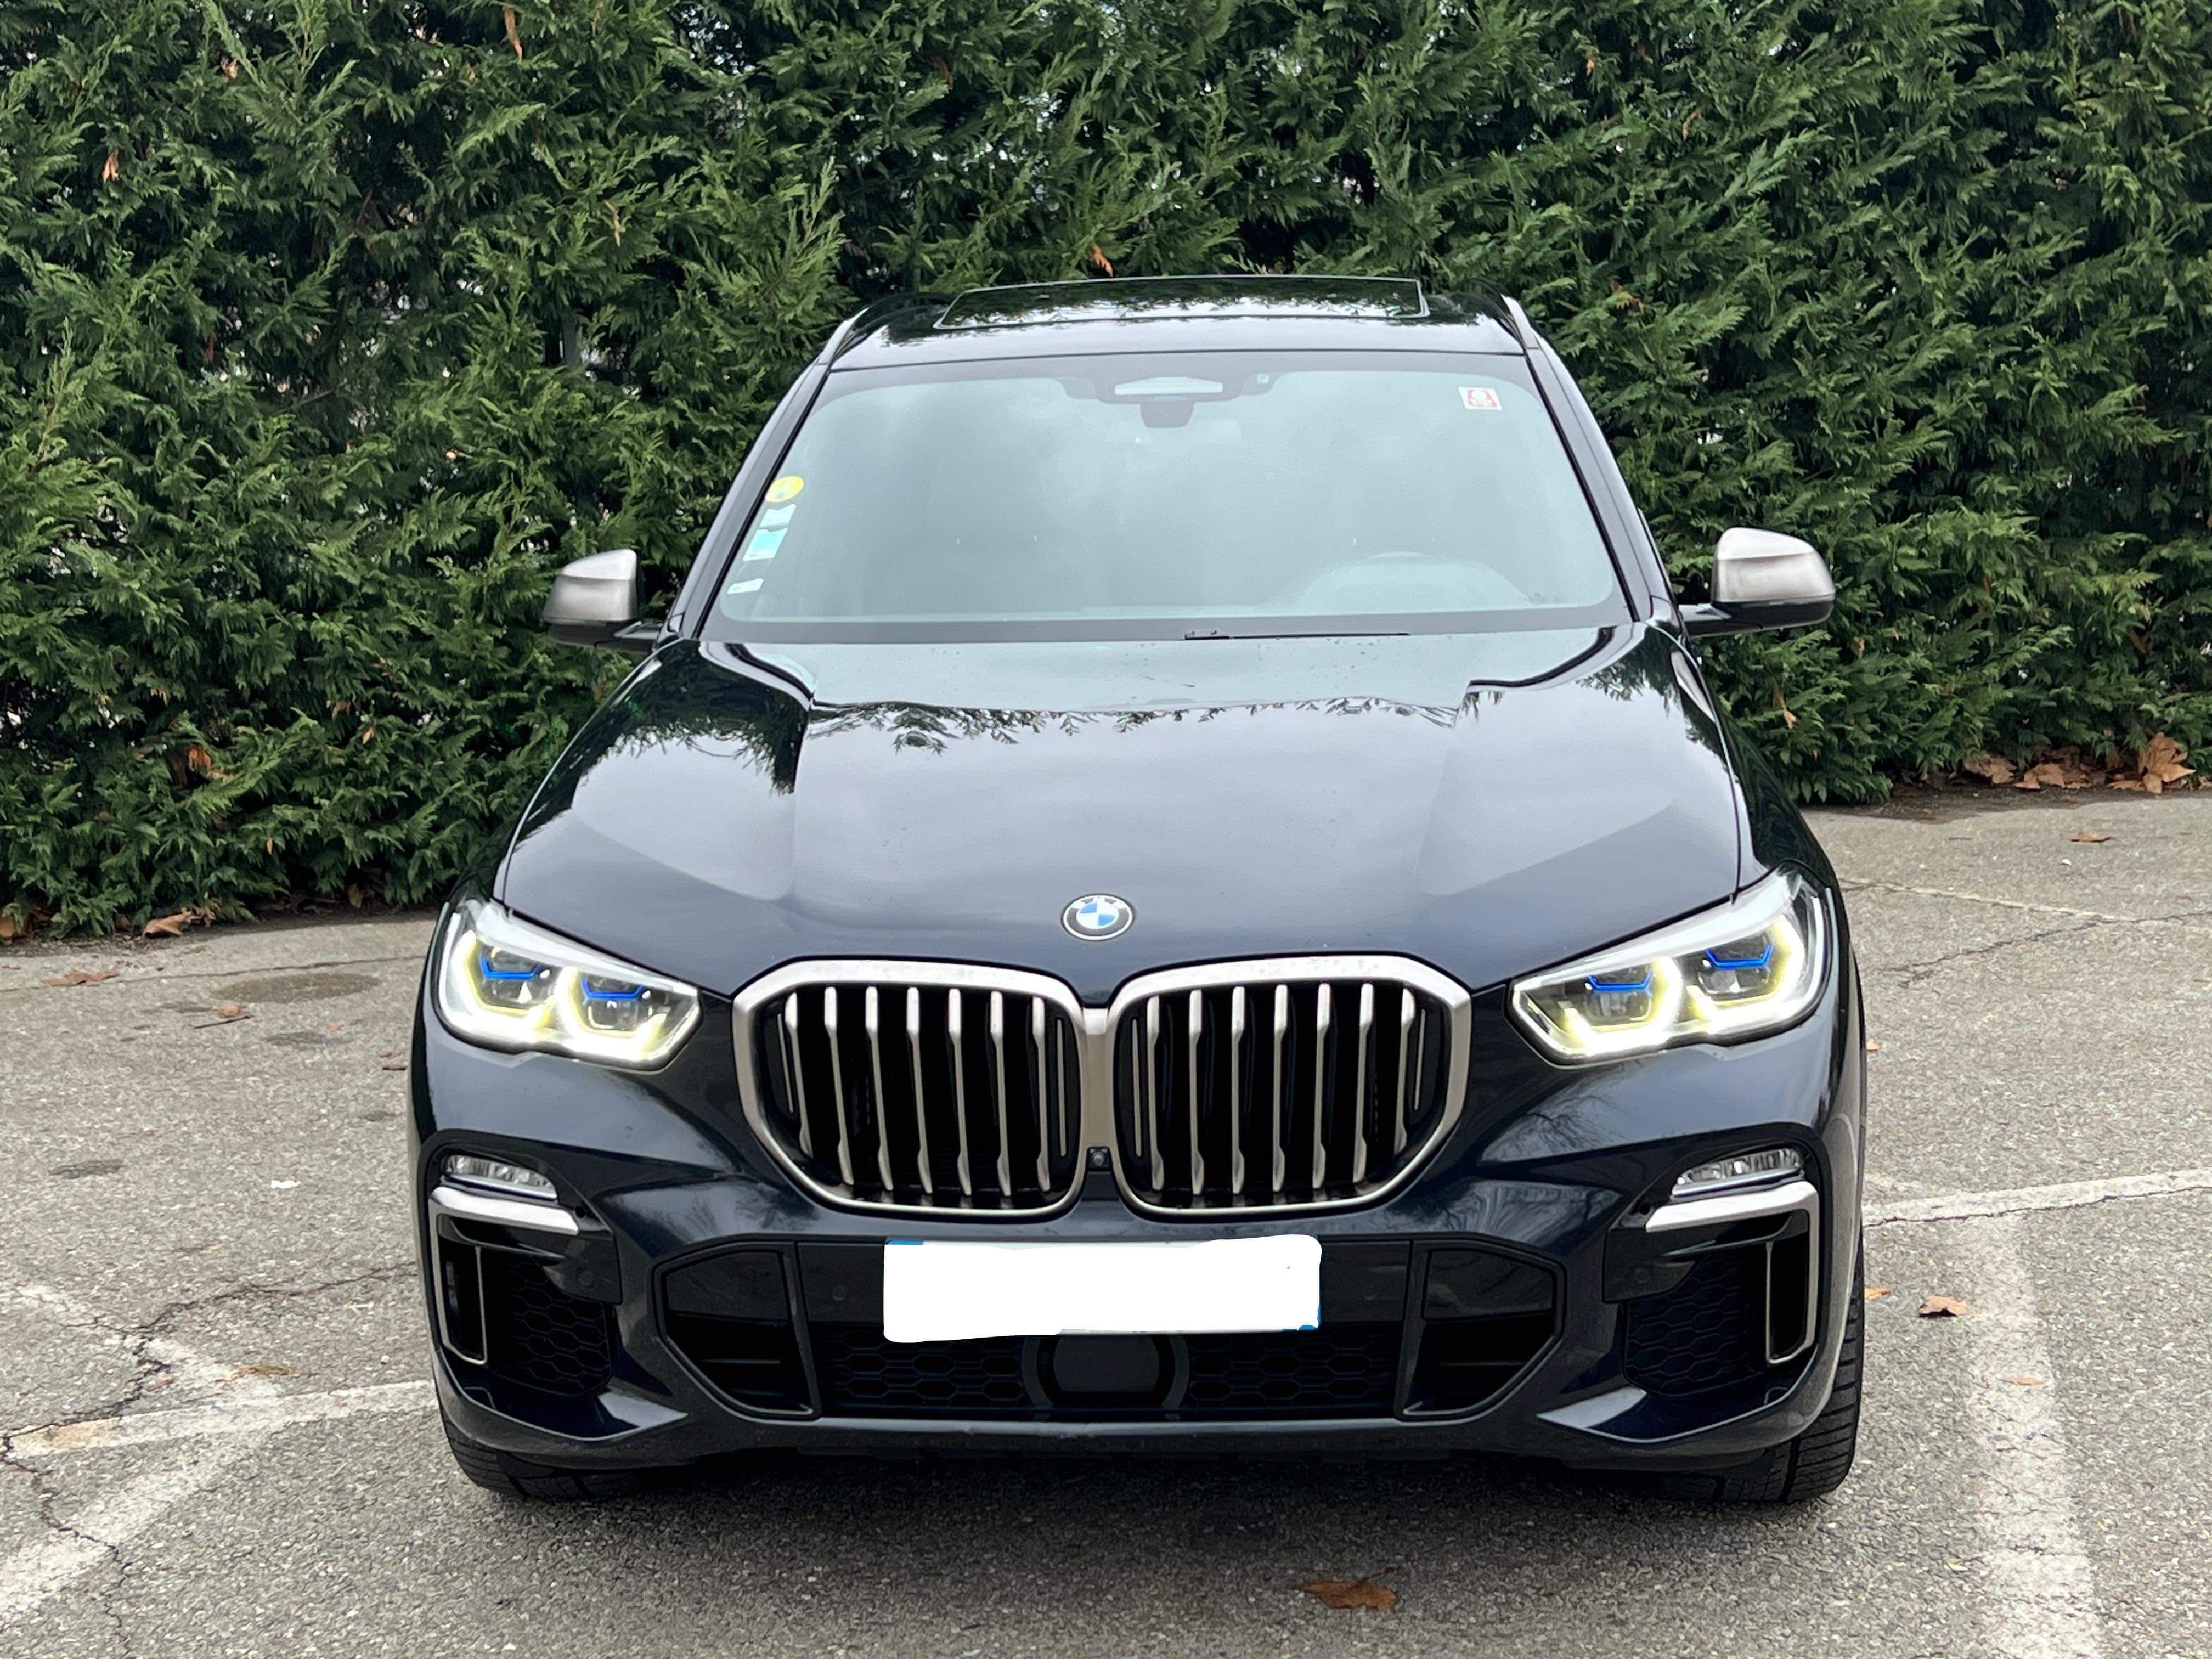 BMW X5 2019 M50D 400CP 2019  Suspensie Pneumatica Soft Close Panoramic